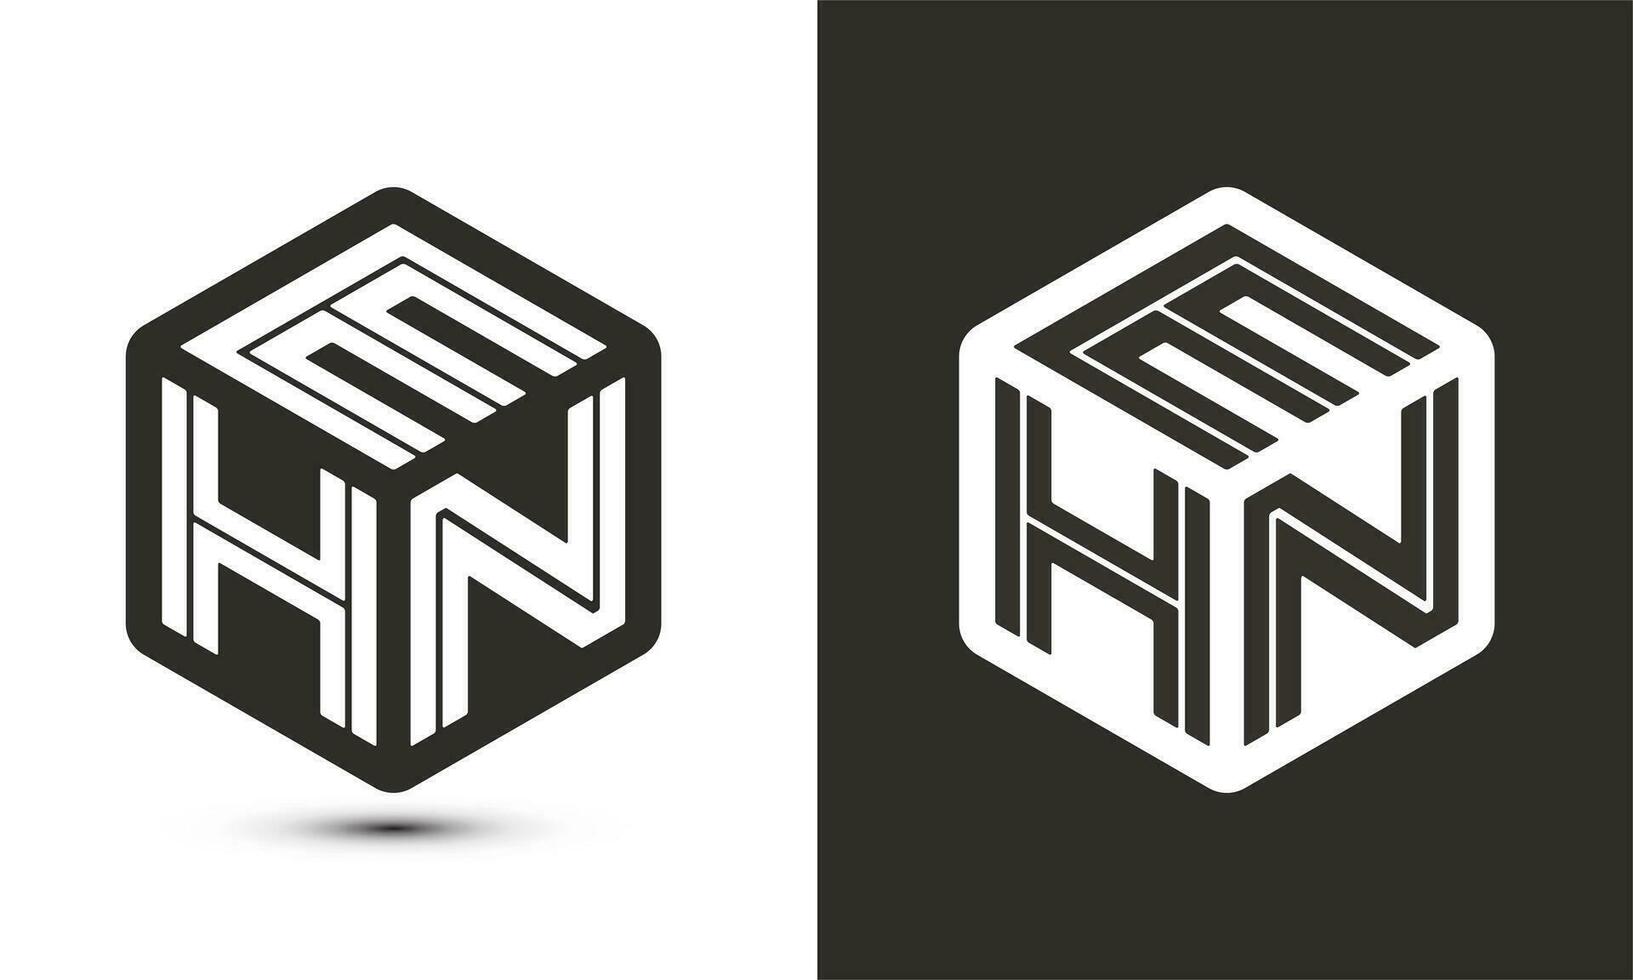 ehn brief logo ontwerp met illustrator kubus logo, vector logo modern alfabet doopvont overlappen stijl.